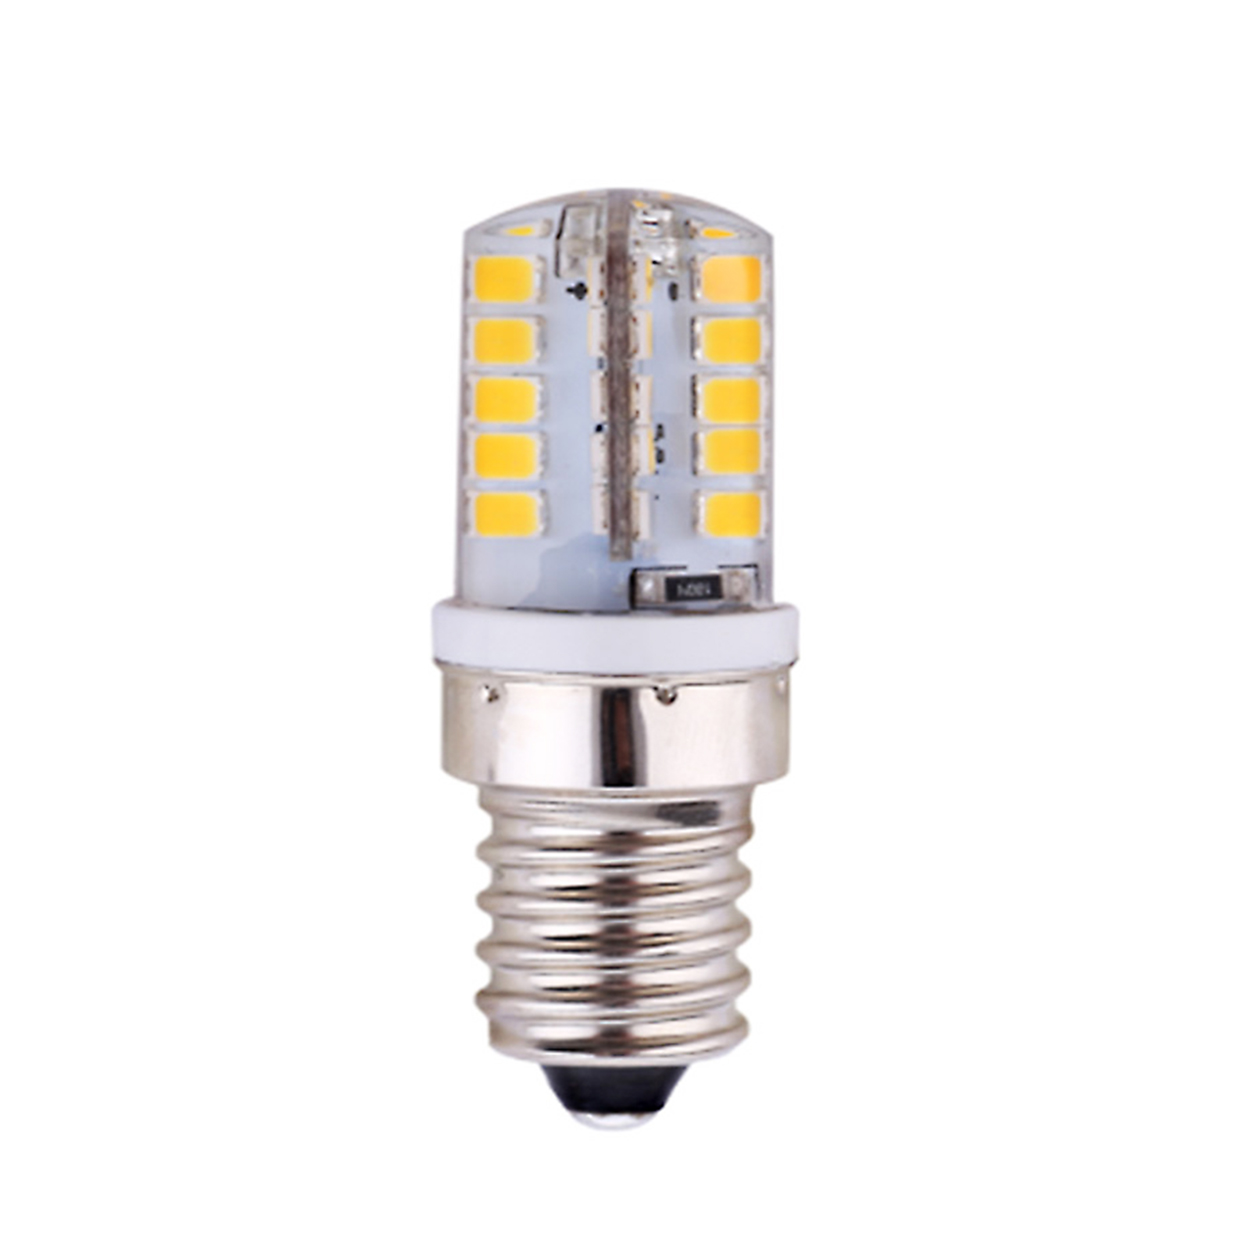 2.5W E14 LED Bulb 40PCS of SMD2835 AC 200-250V 200-300lm